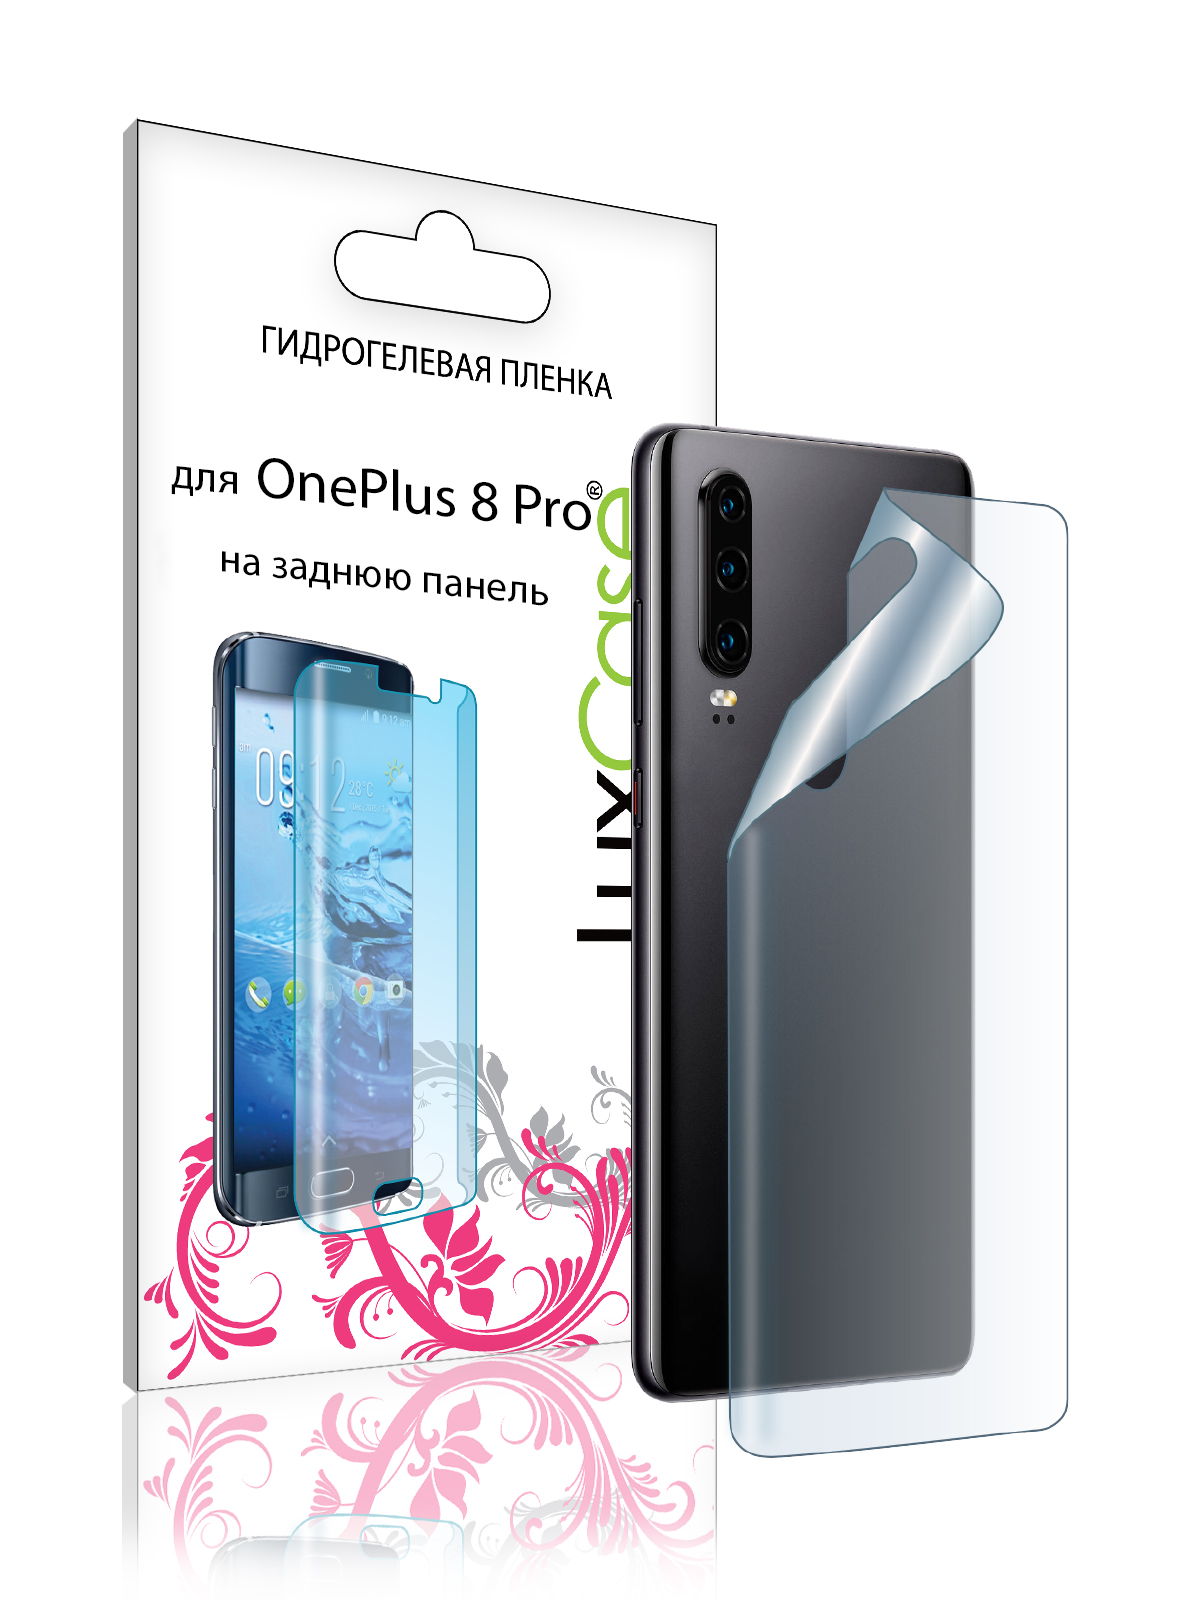 

Защитная гидрогелевая пленка luxcase для OnePlus 8 Pro На заднюю поверхность/86160